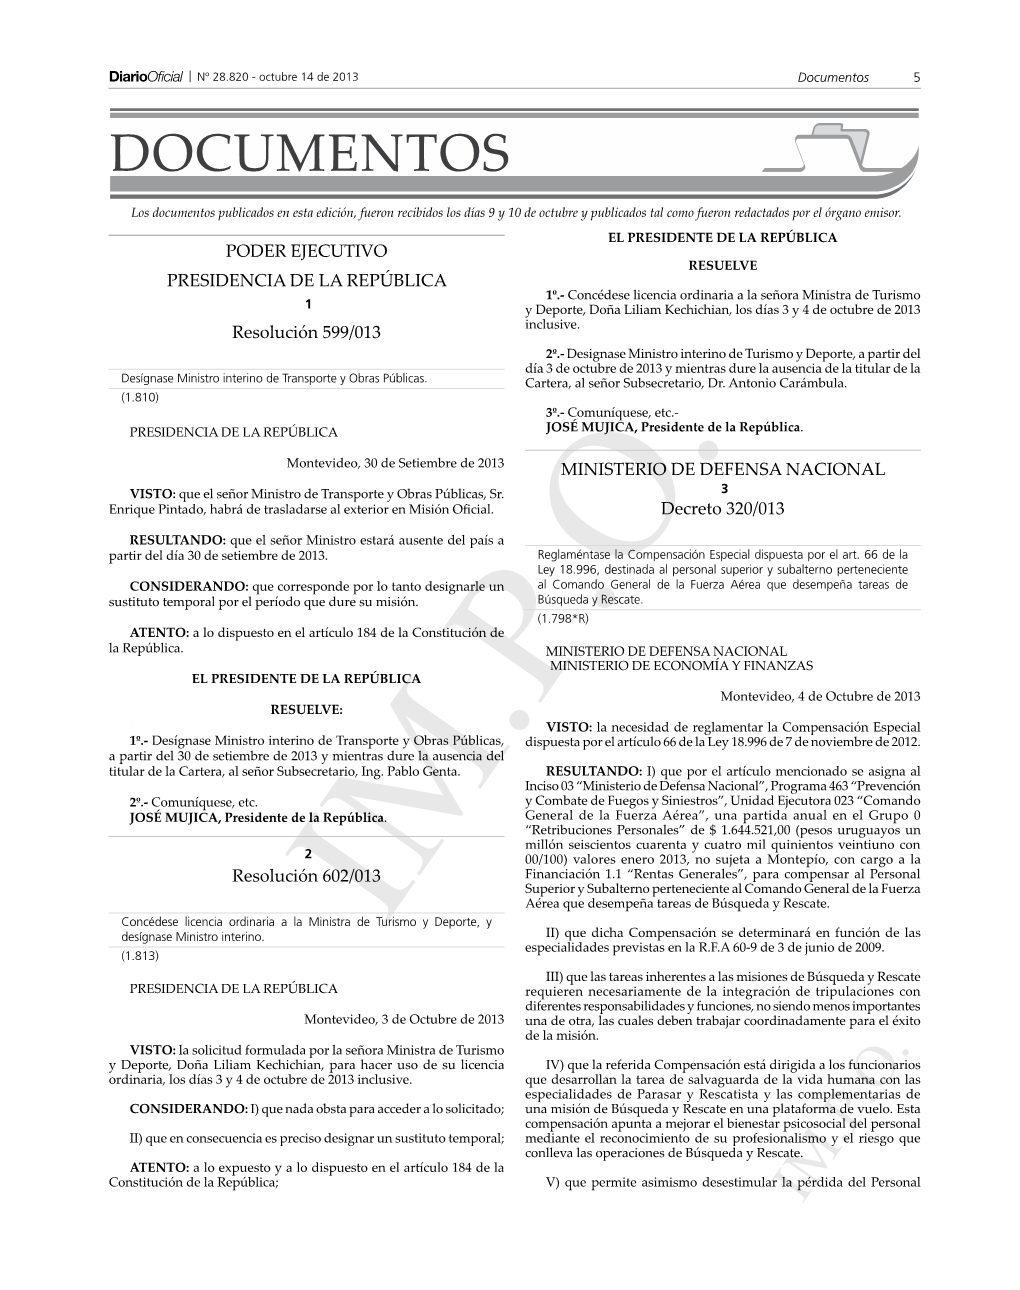 IM.P.O.Especialidades Previstas En La R.F.A 60-9 De 3 De Junio De 2009